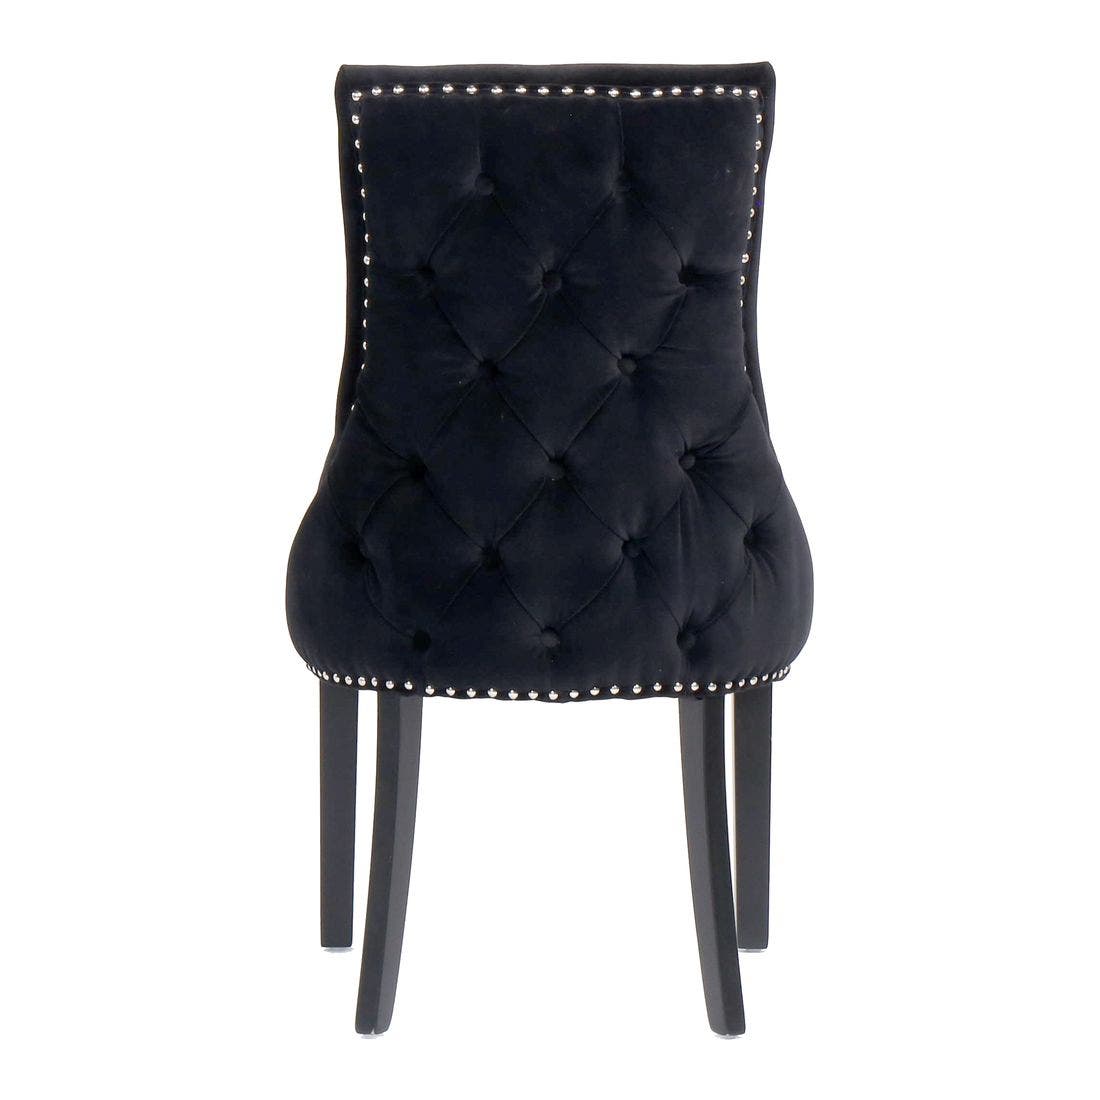 เก้าอี้ทานอาหาร เก้าอี้ไม้เบาะผ้า รุ่น Bingสีดำ-SB Design Square